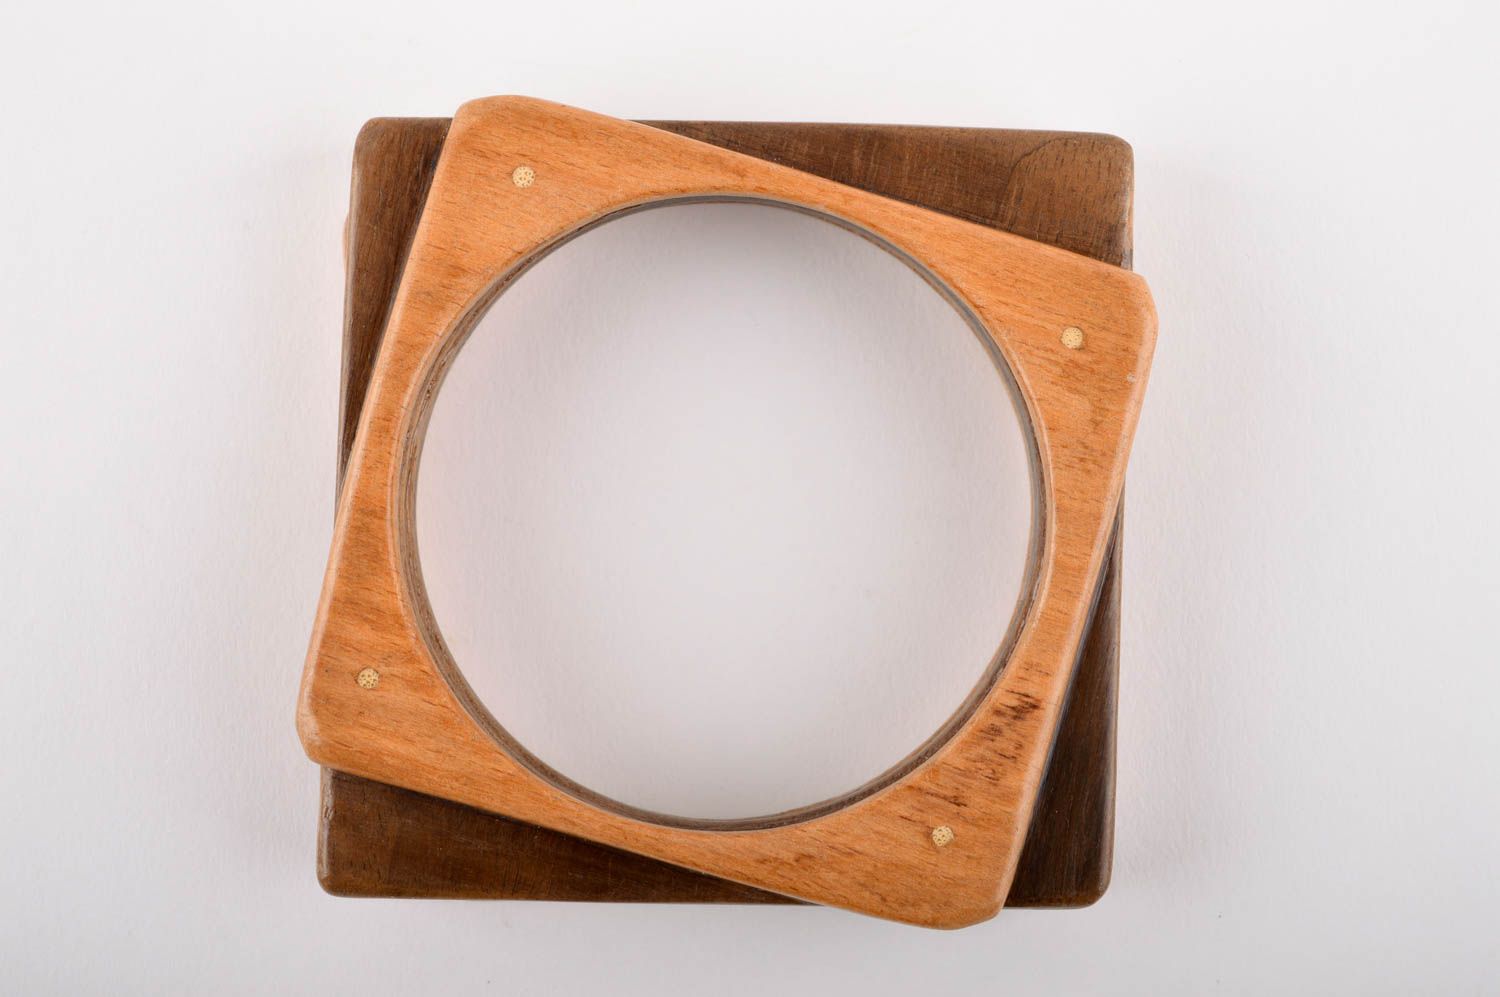 Подарок ручной работы браслет на руку бижутерия из дерева квадратный стильный фото 3